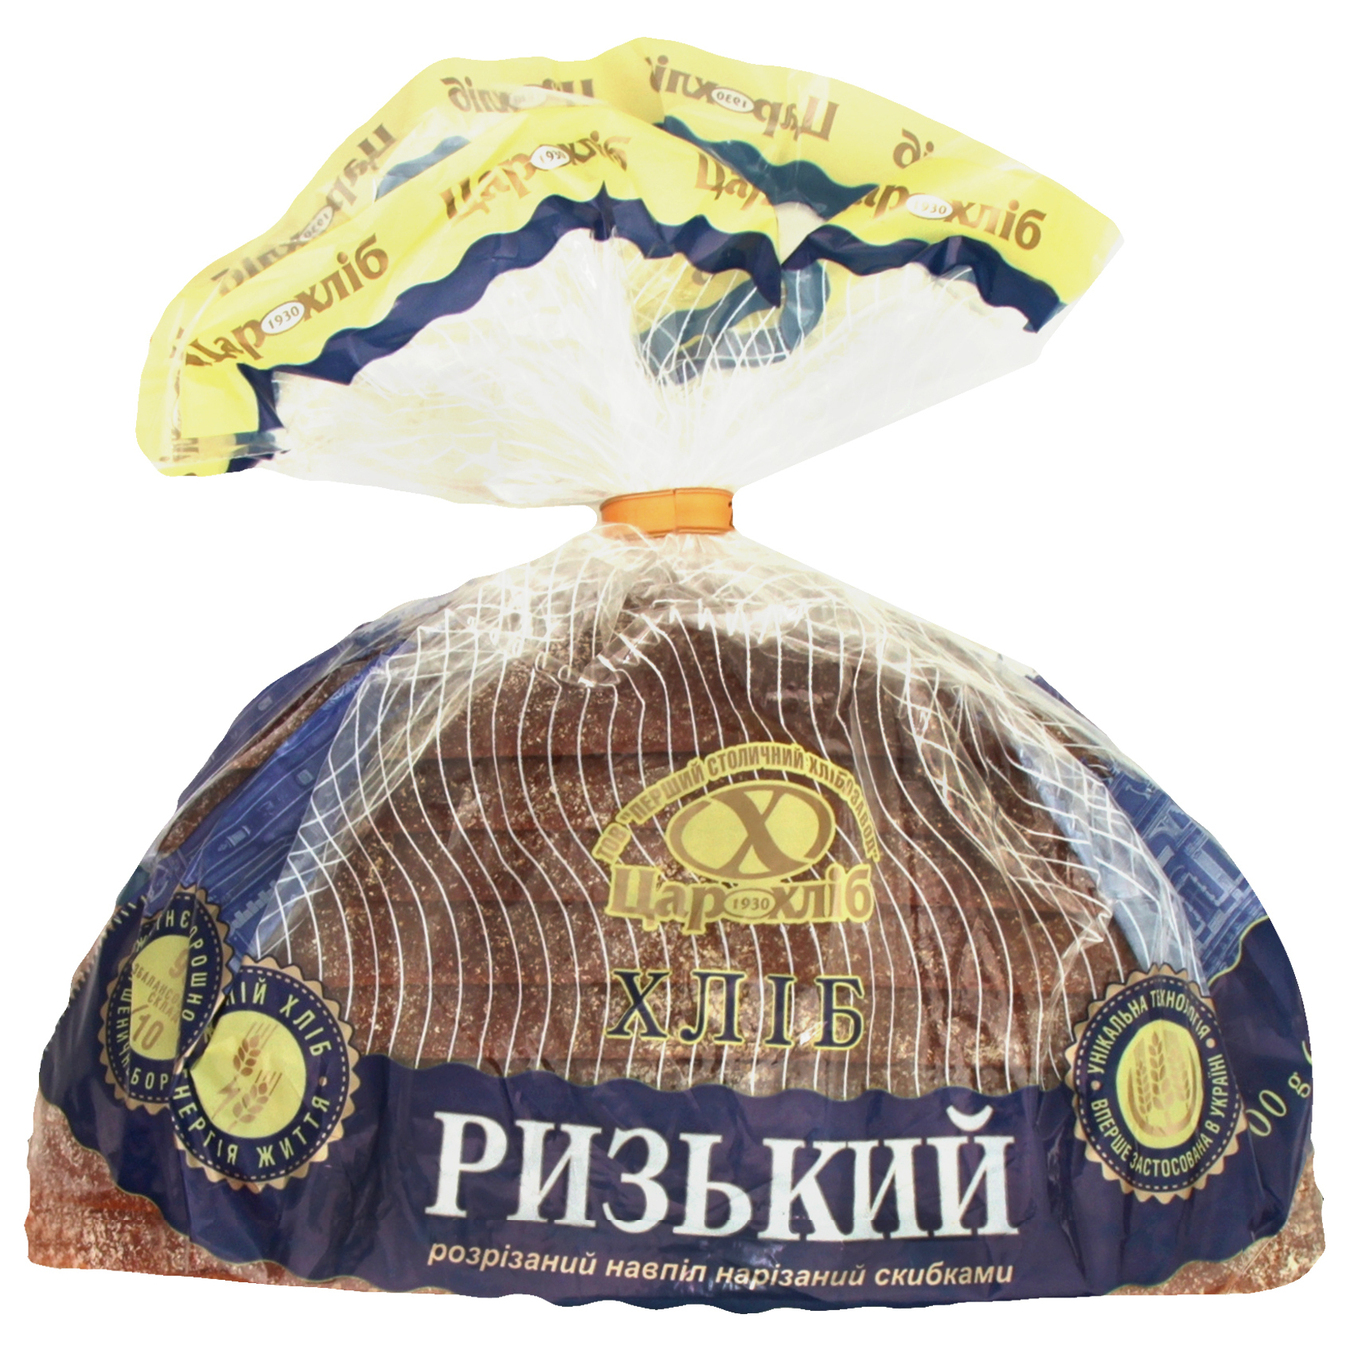 Хлеб Царь хлеб Рижский разрезанный пополам нарезанный упакован 400г